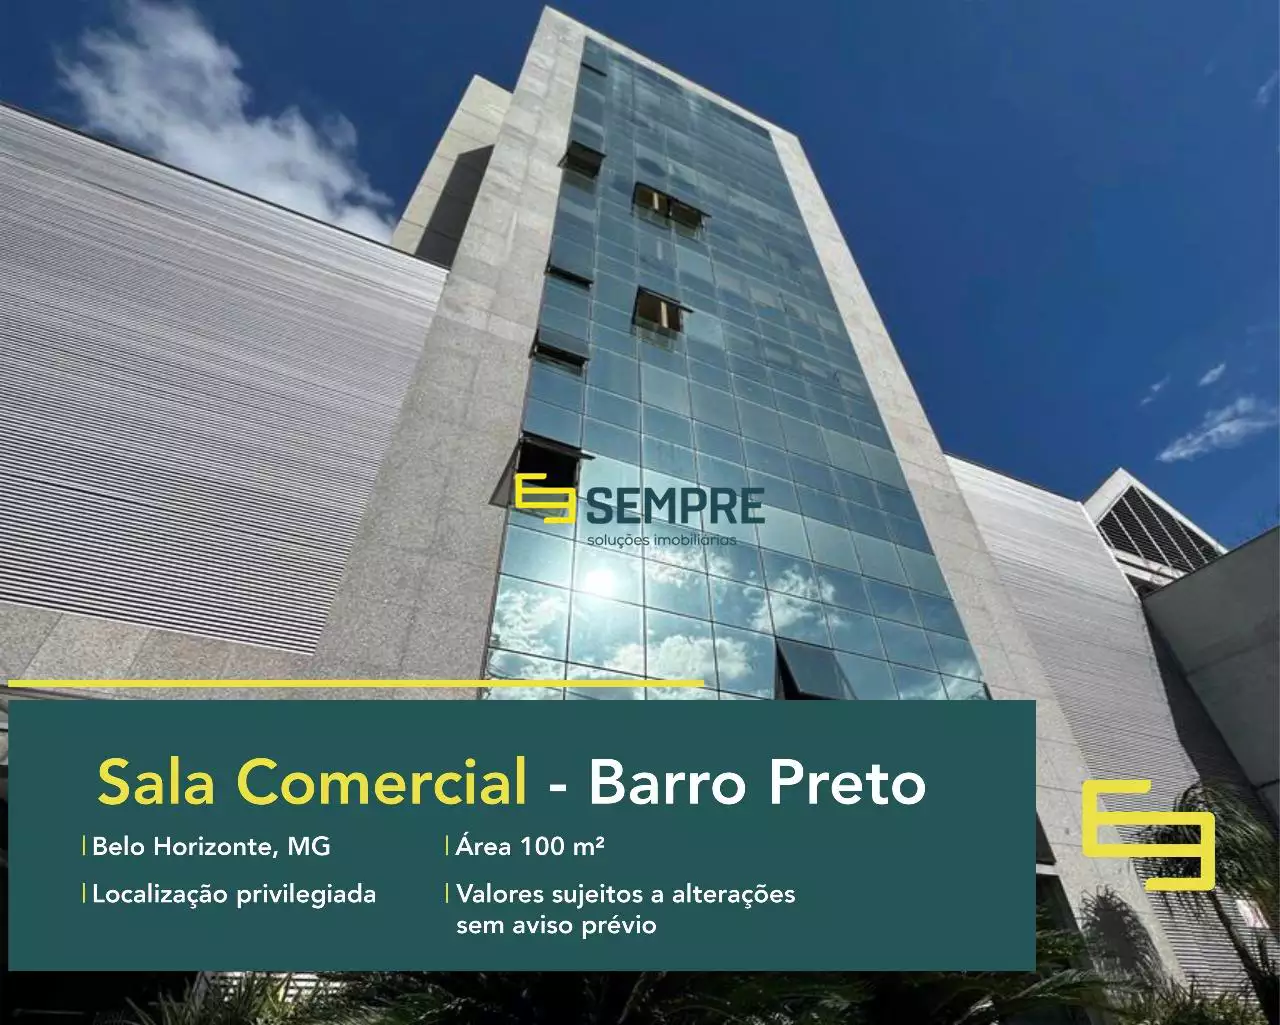 Sala comercial no bairro Barro Preto para locação - BH, excelente localização. O estabelecimento comercial conta com área de 100 m².